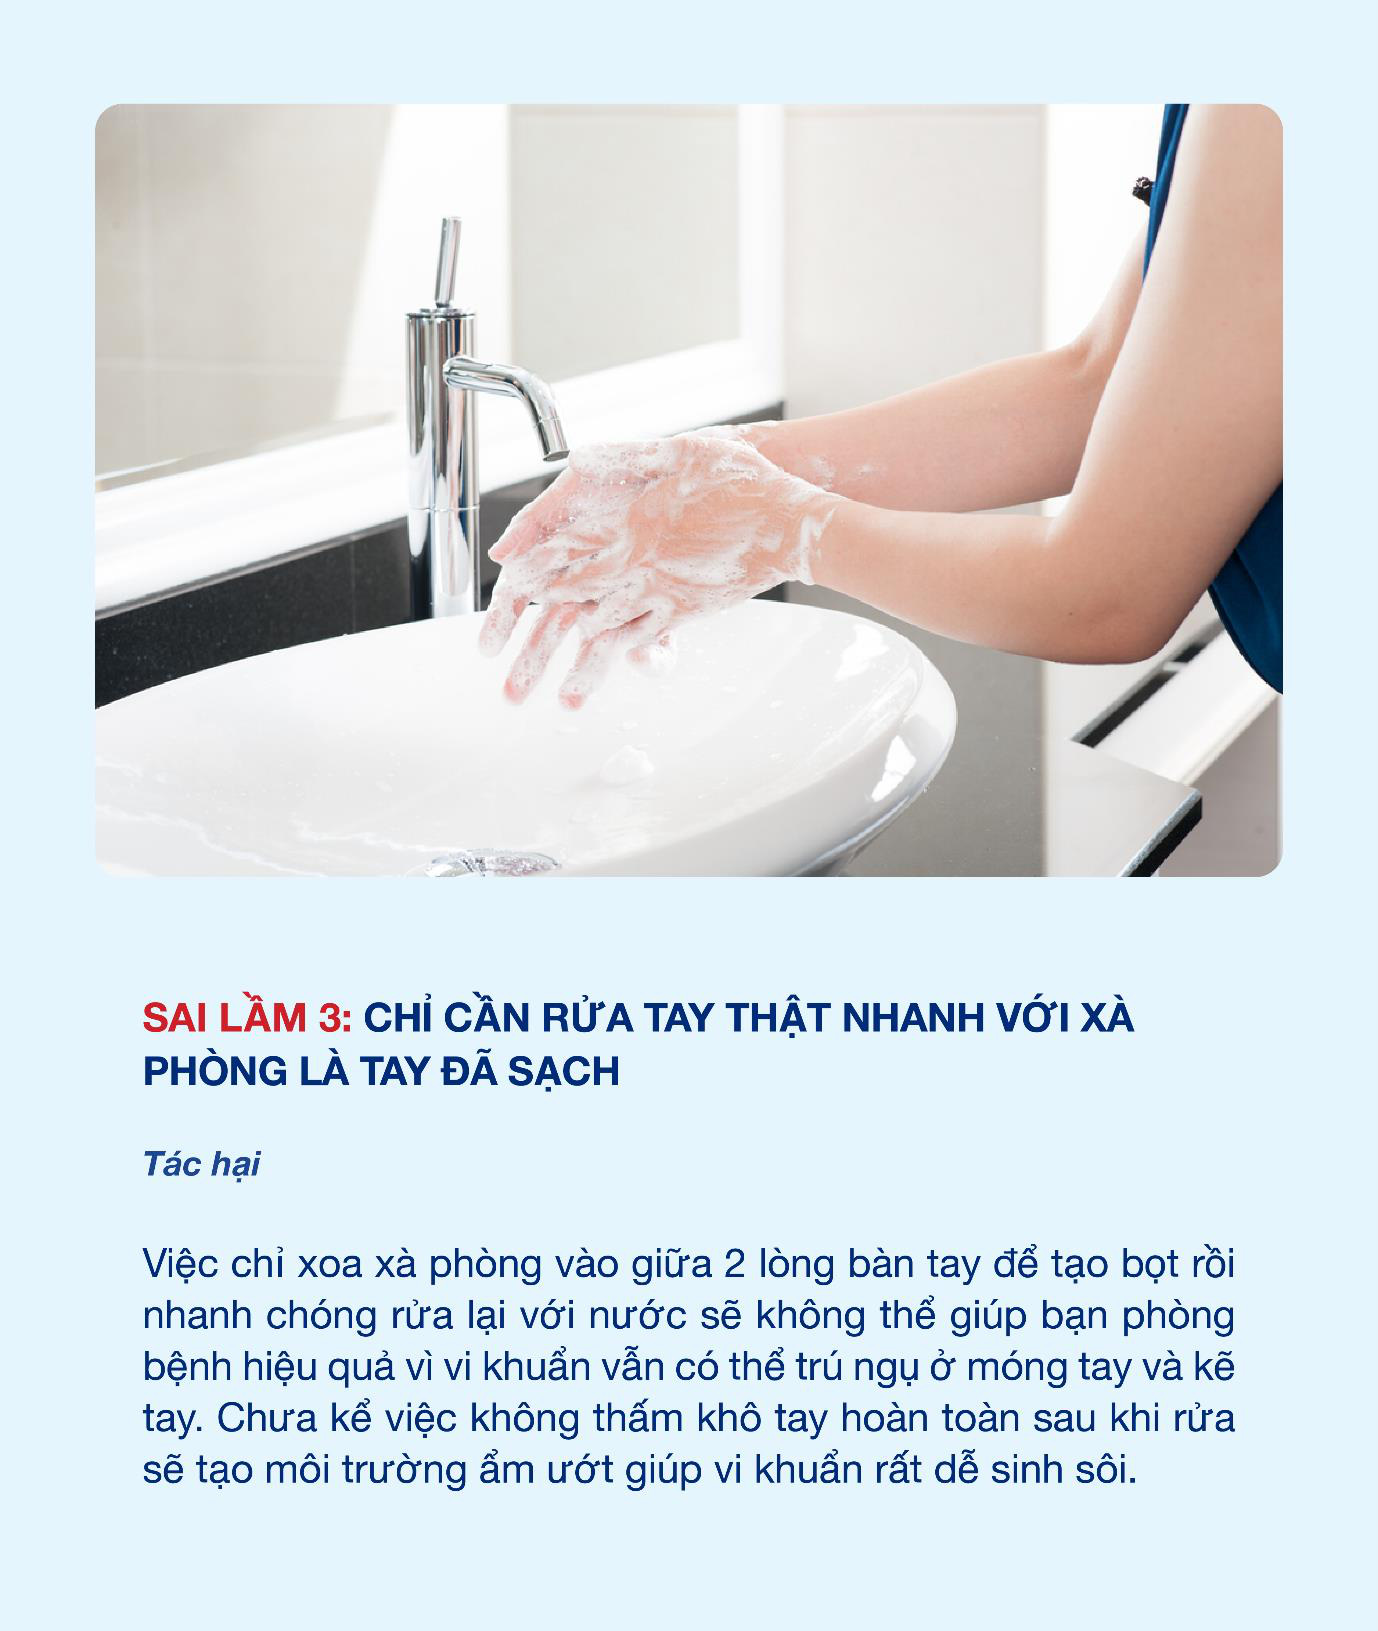 Hiệu quả phòng bệnh của rửa tay bằng xà phòng trở nên kém hiệu quả chỉ vì 3 sai lầm sau - Ảnh 5.